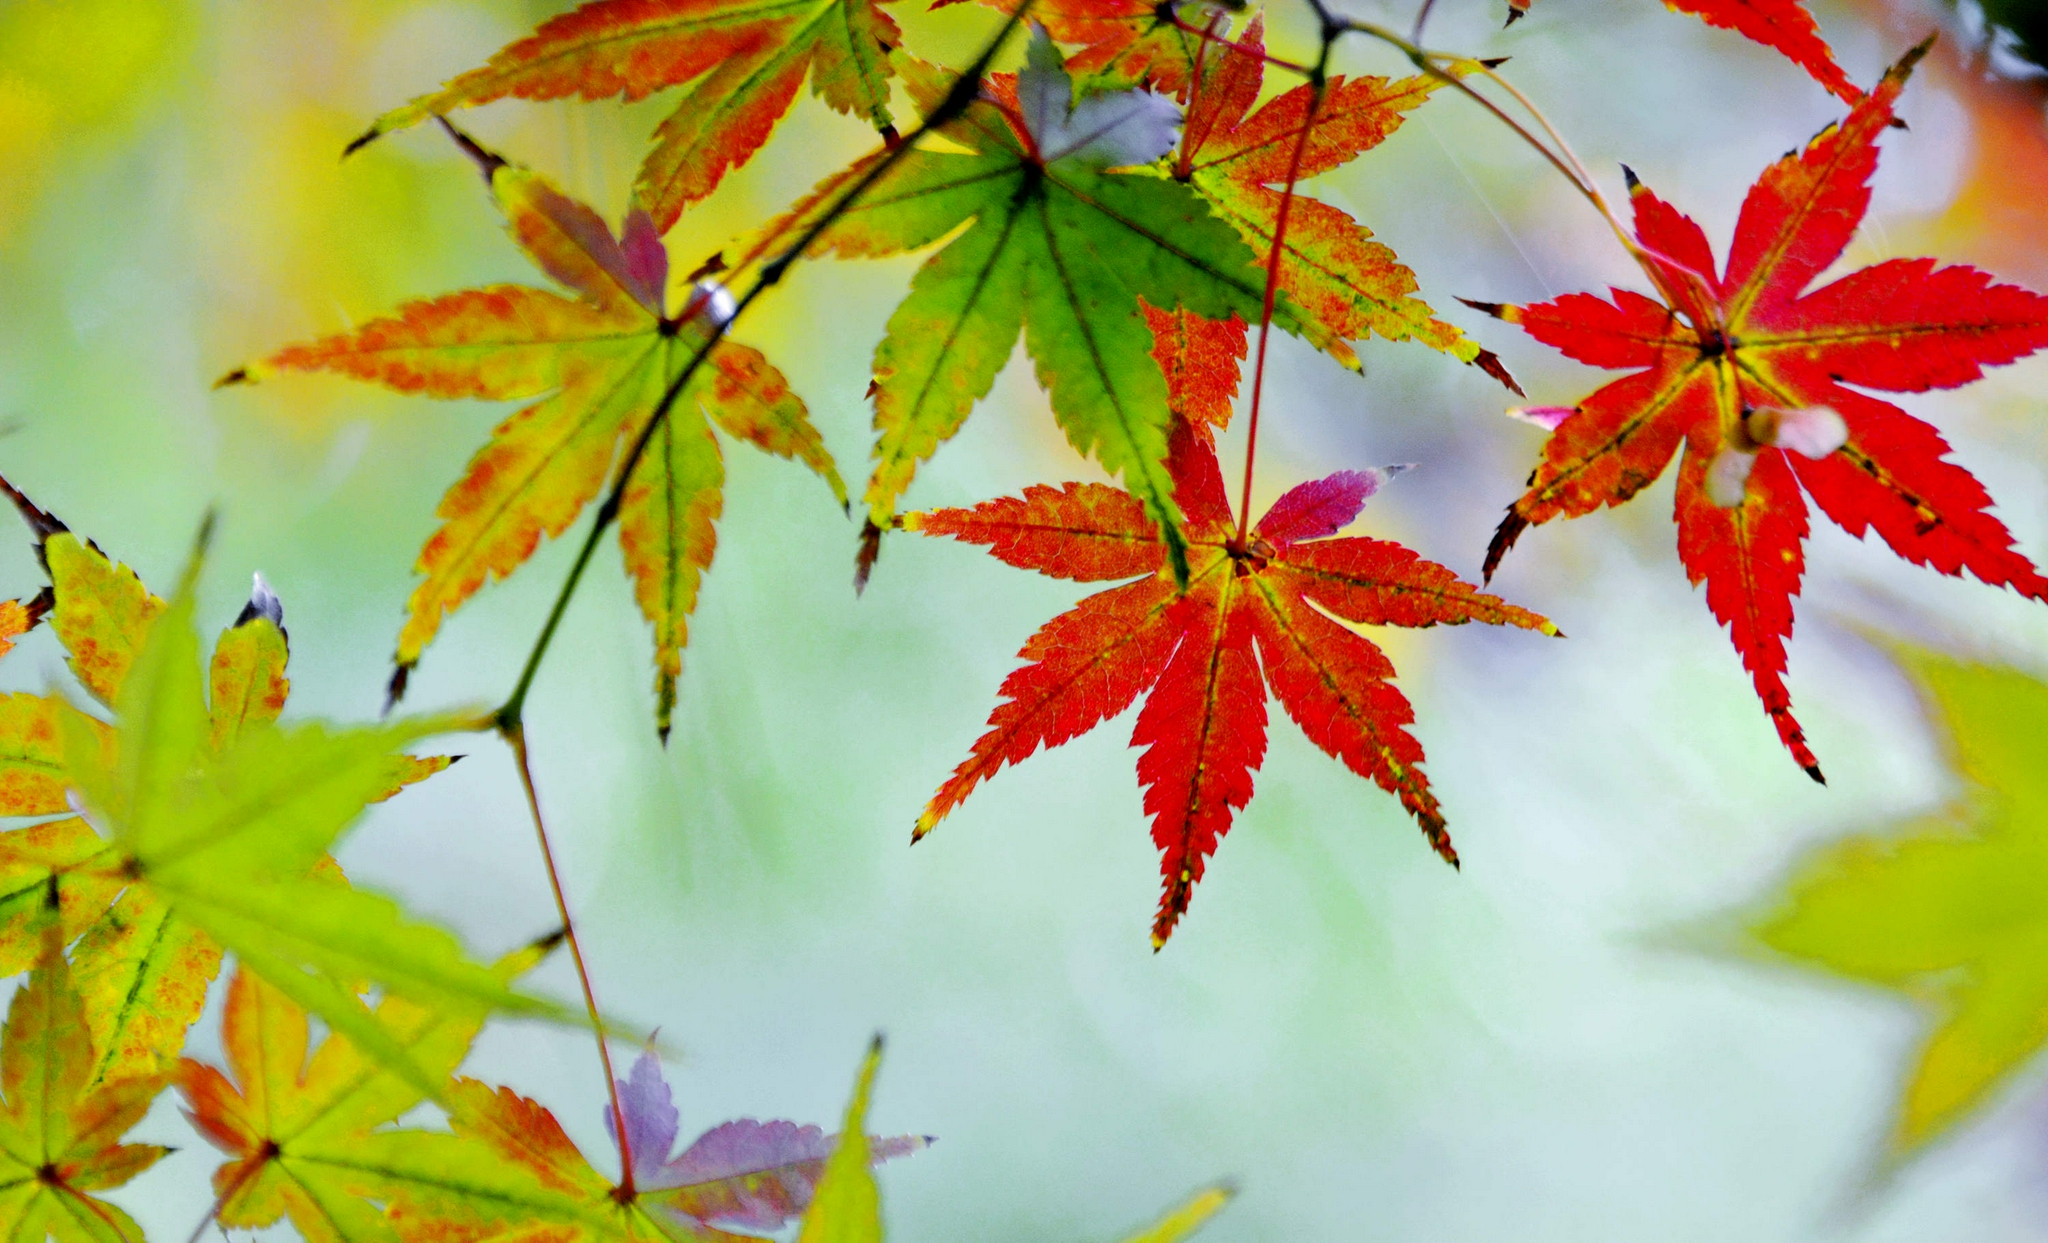 红了的枫叶,秋天的靓丽风景线,江苏省无锡市锡山区锡北镇